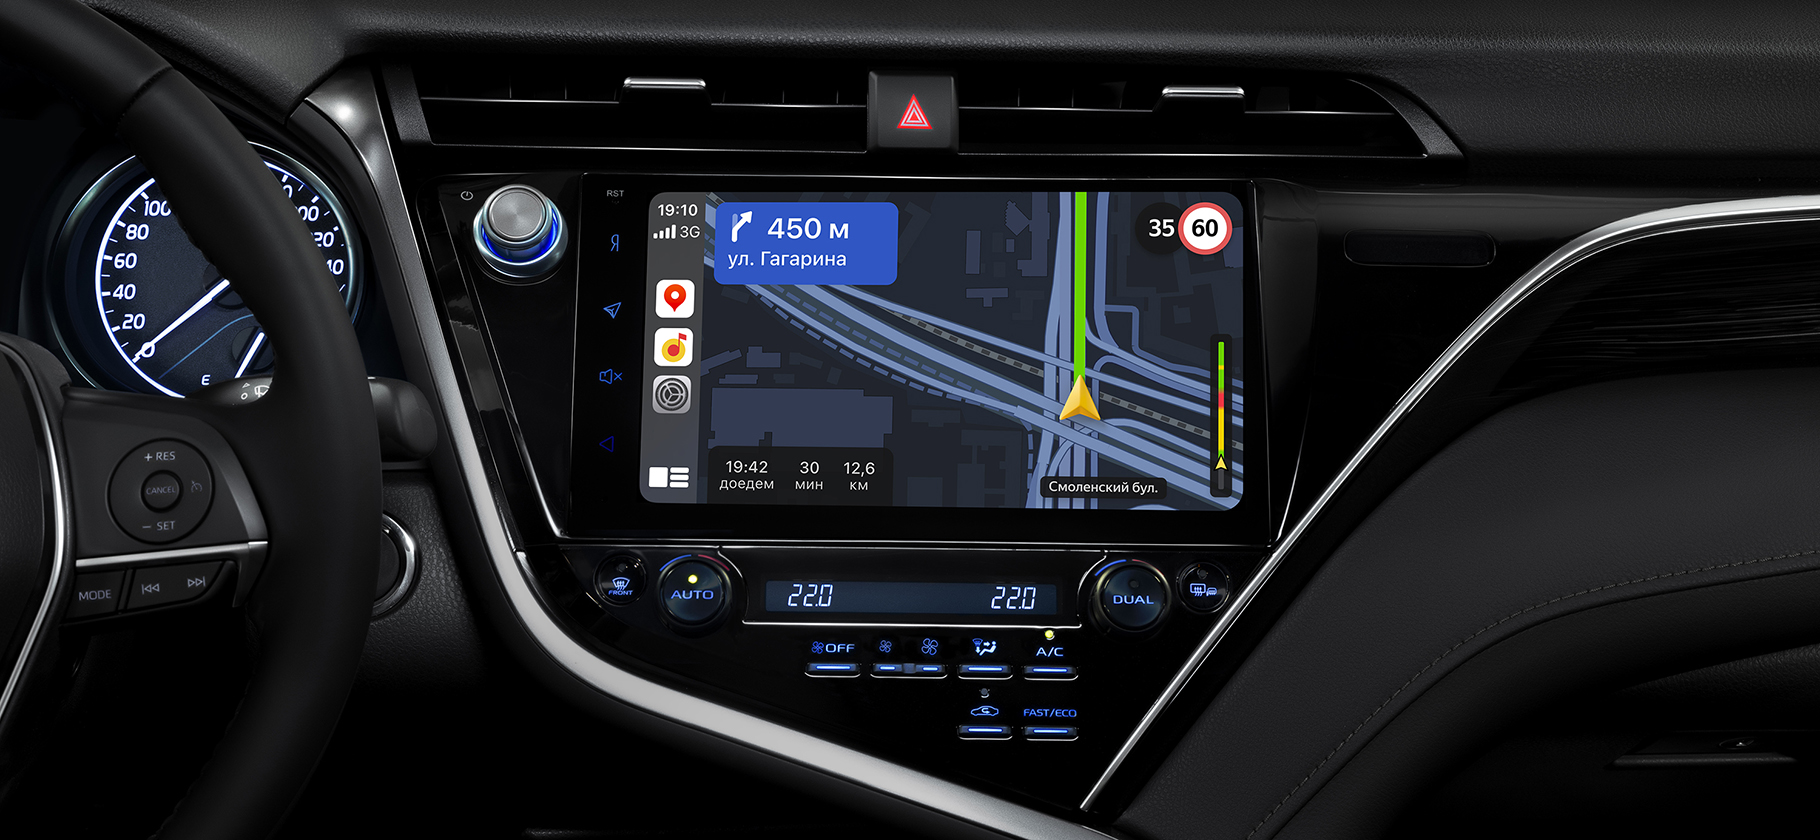 «Яндекс-карты» и «Навигатор» заработали в Apple CarPlay и Android Auto